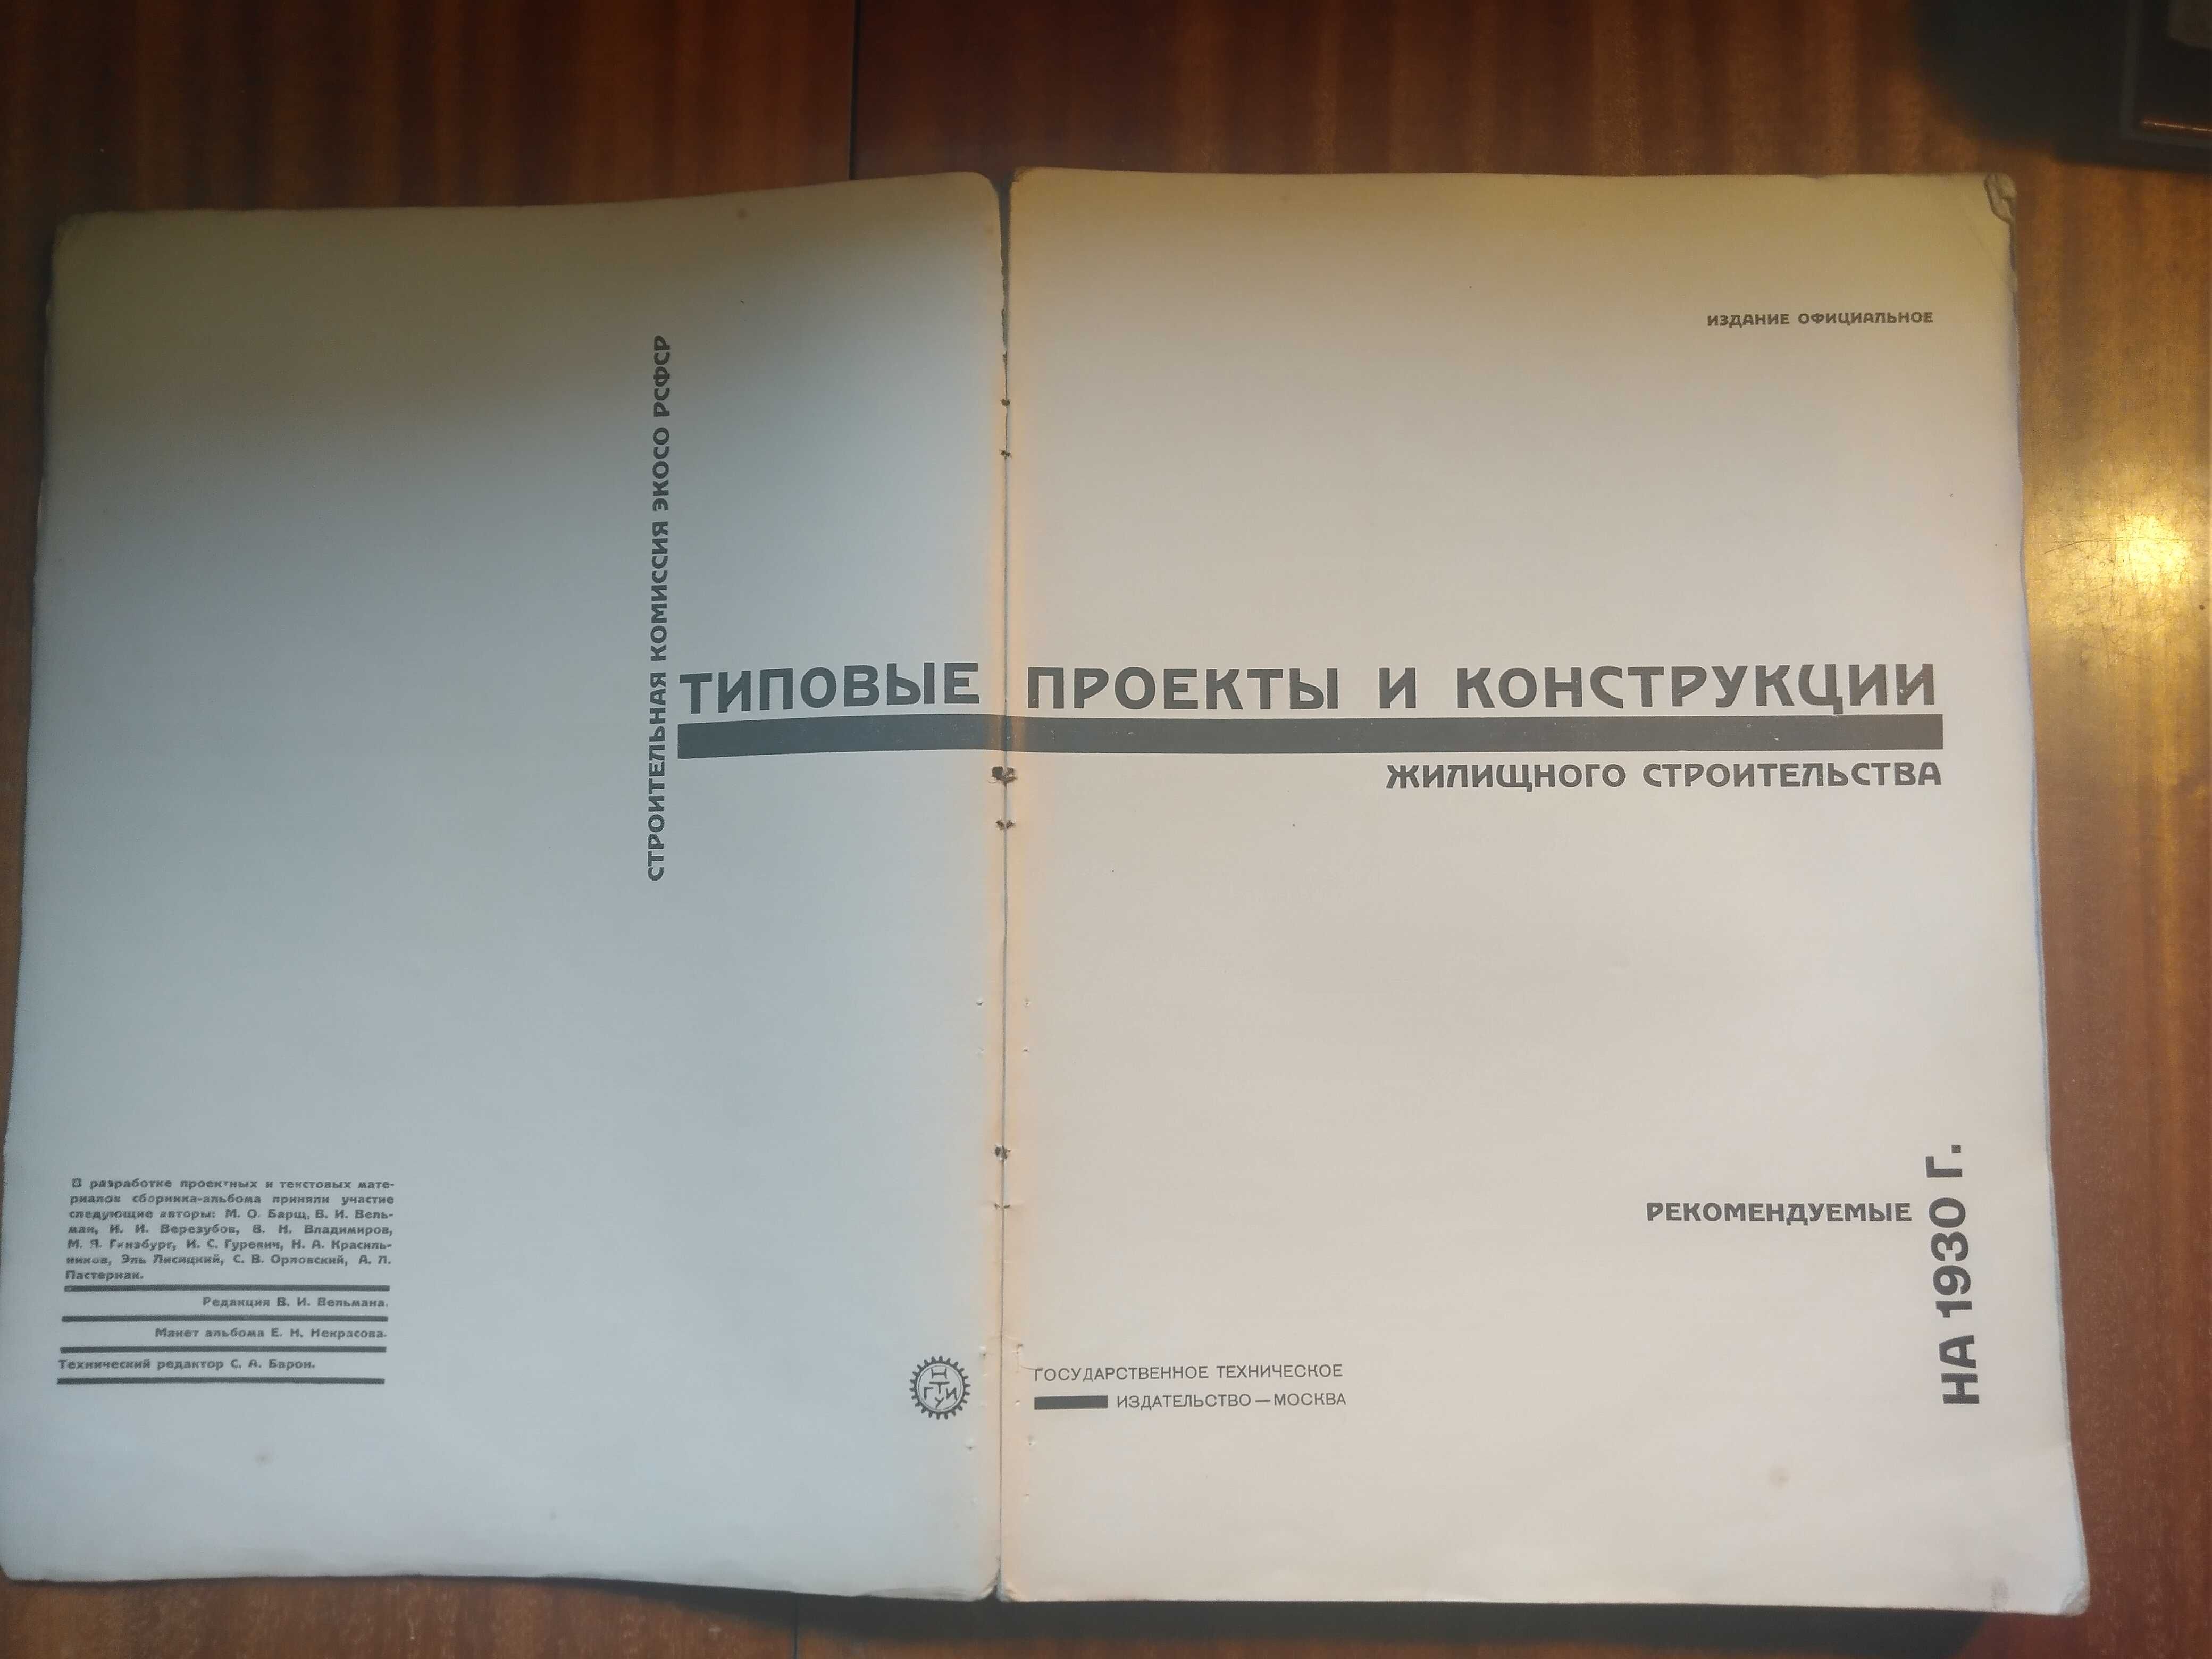 Katalog typowych projektów i konstrukcji - 1930